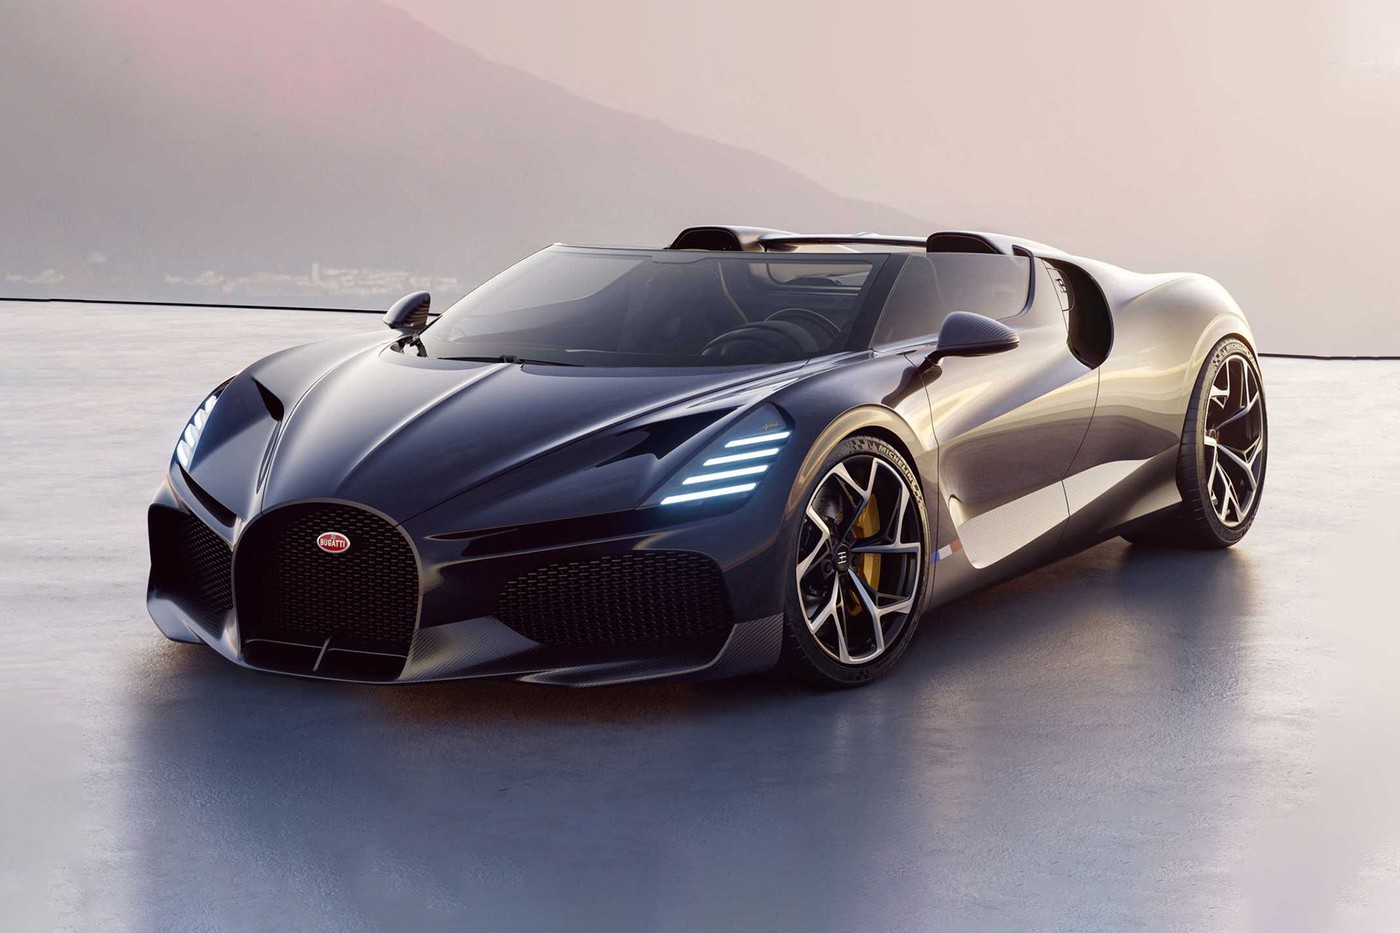 布加迪 Bugatti 正式发表全球限量 99 辆最新超跑车型 Mistral